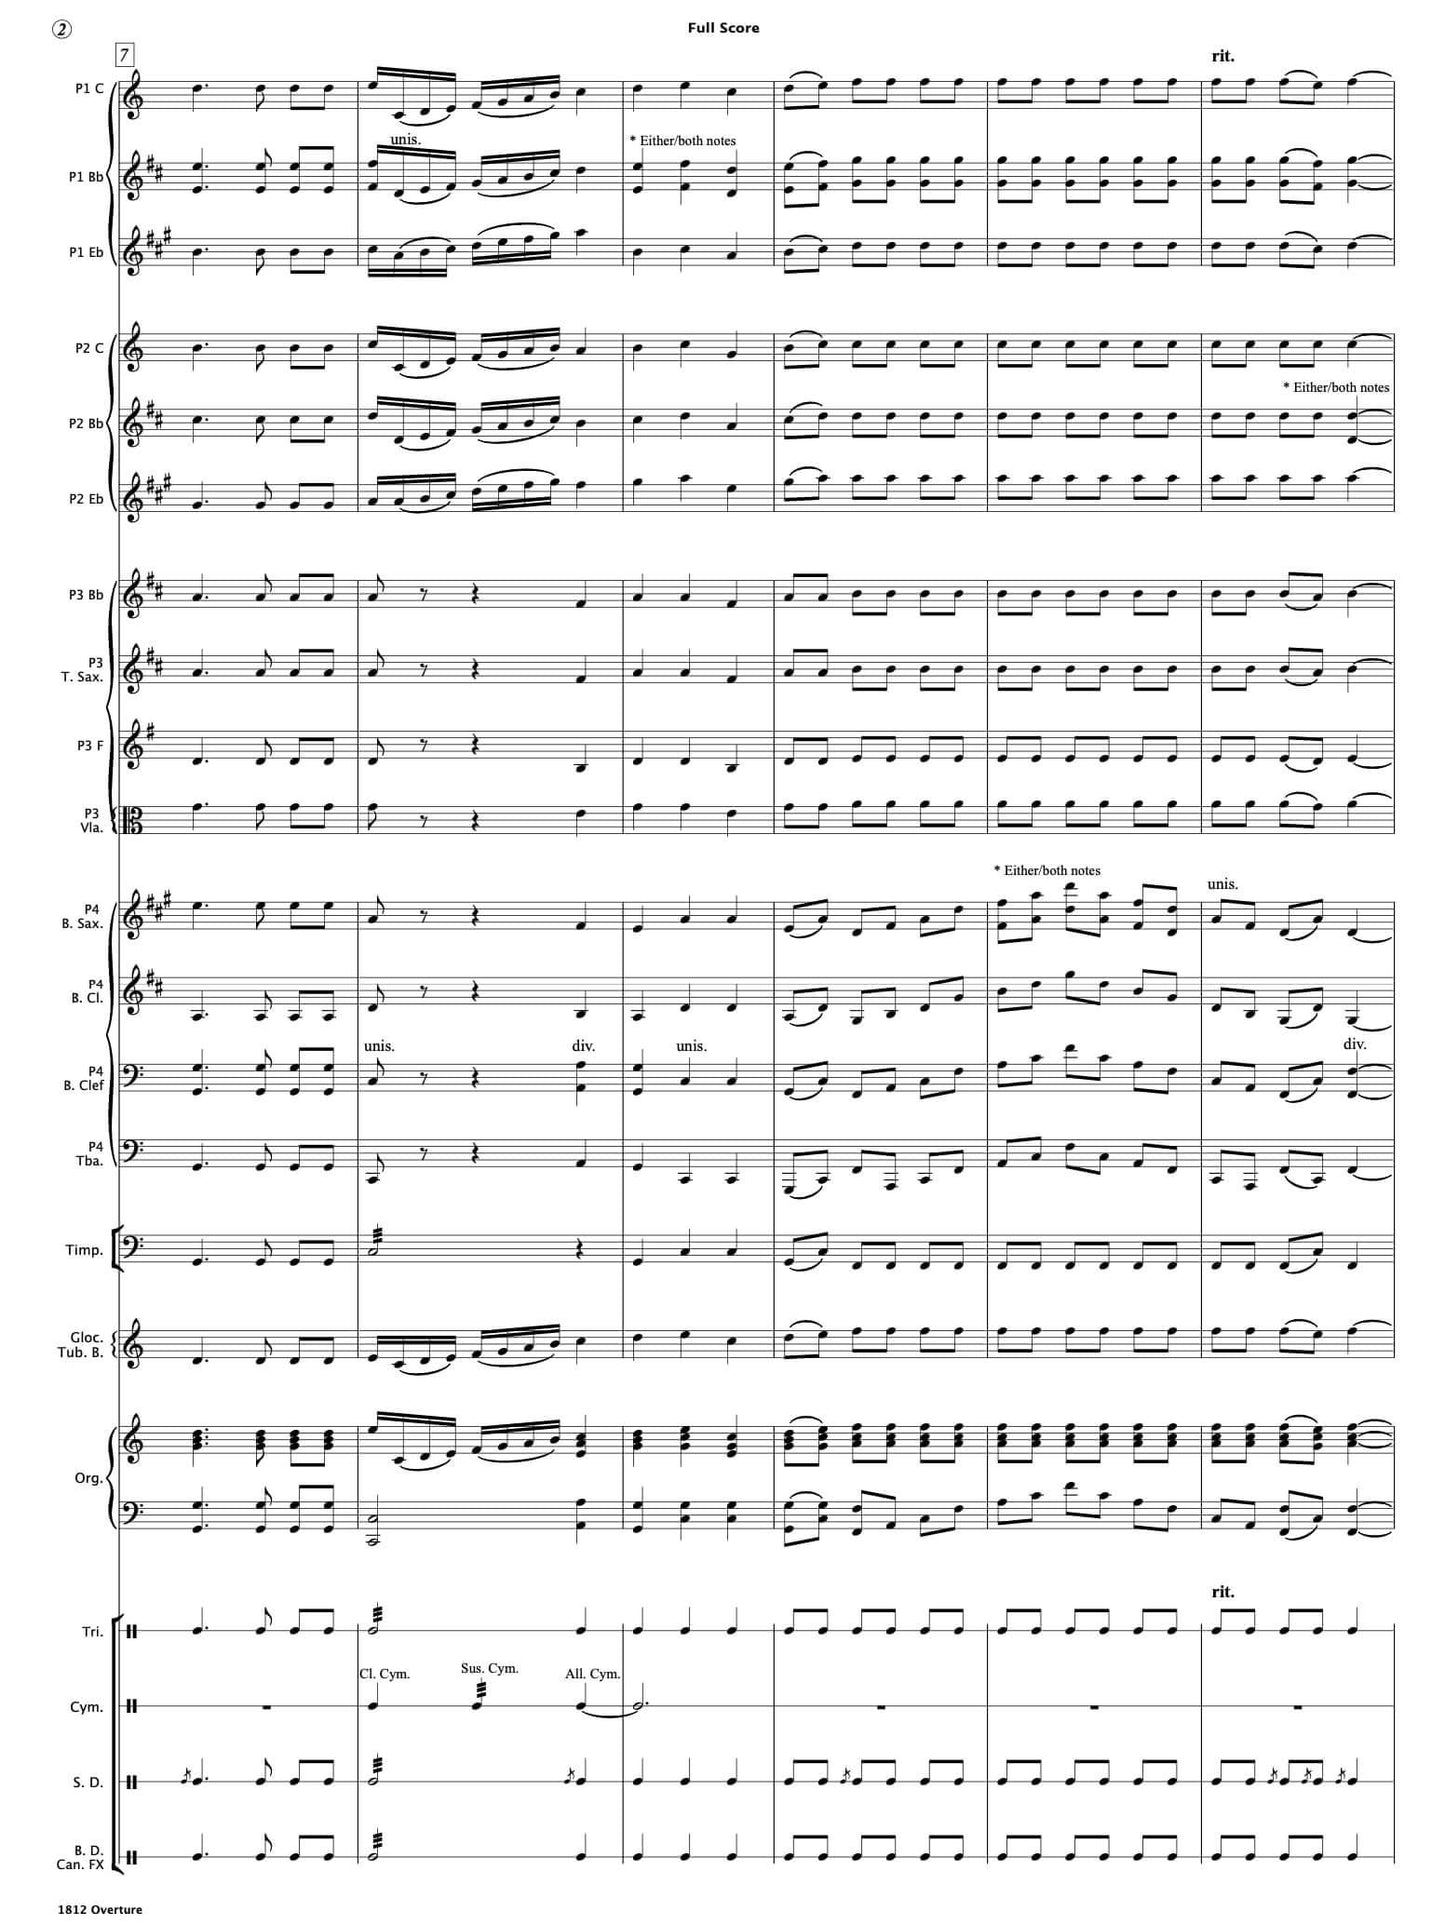 1812 Overture - Paul Barker Music 